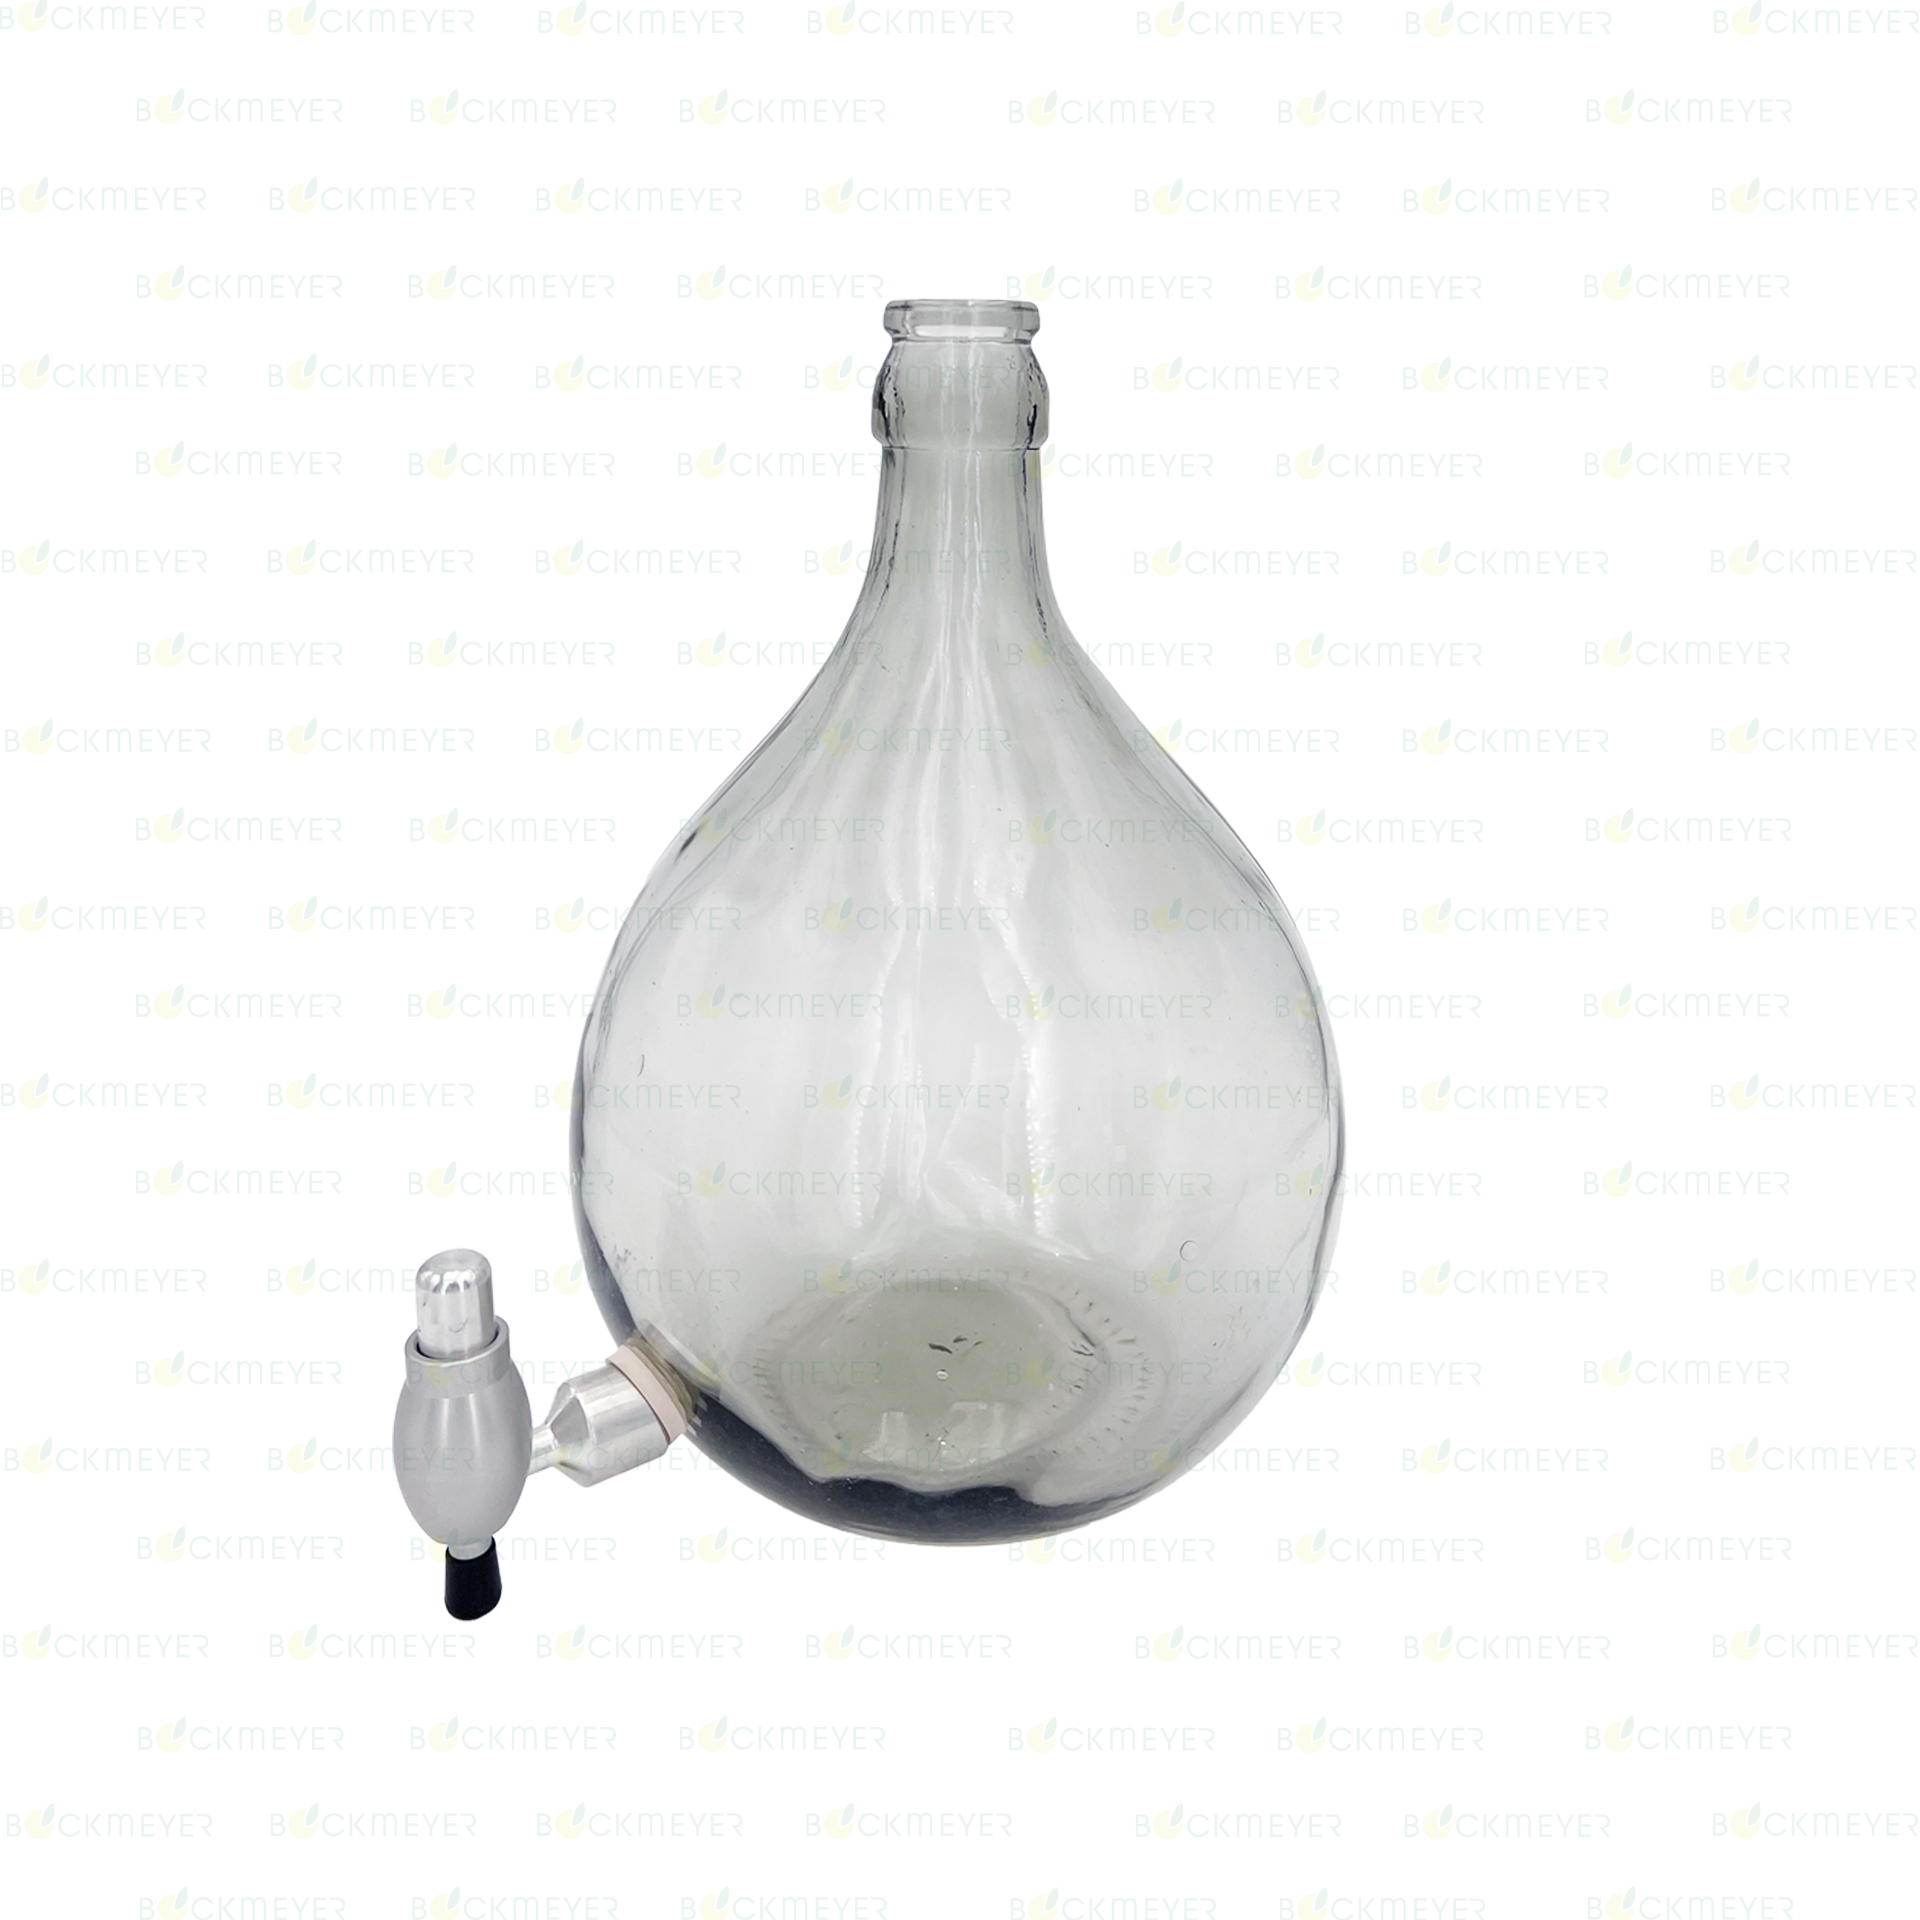 Glasballon 54 Liter mit Ablasshahn Premium (OHNE VERSCHLUSS)